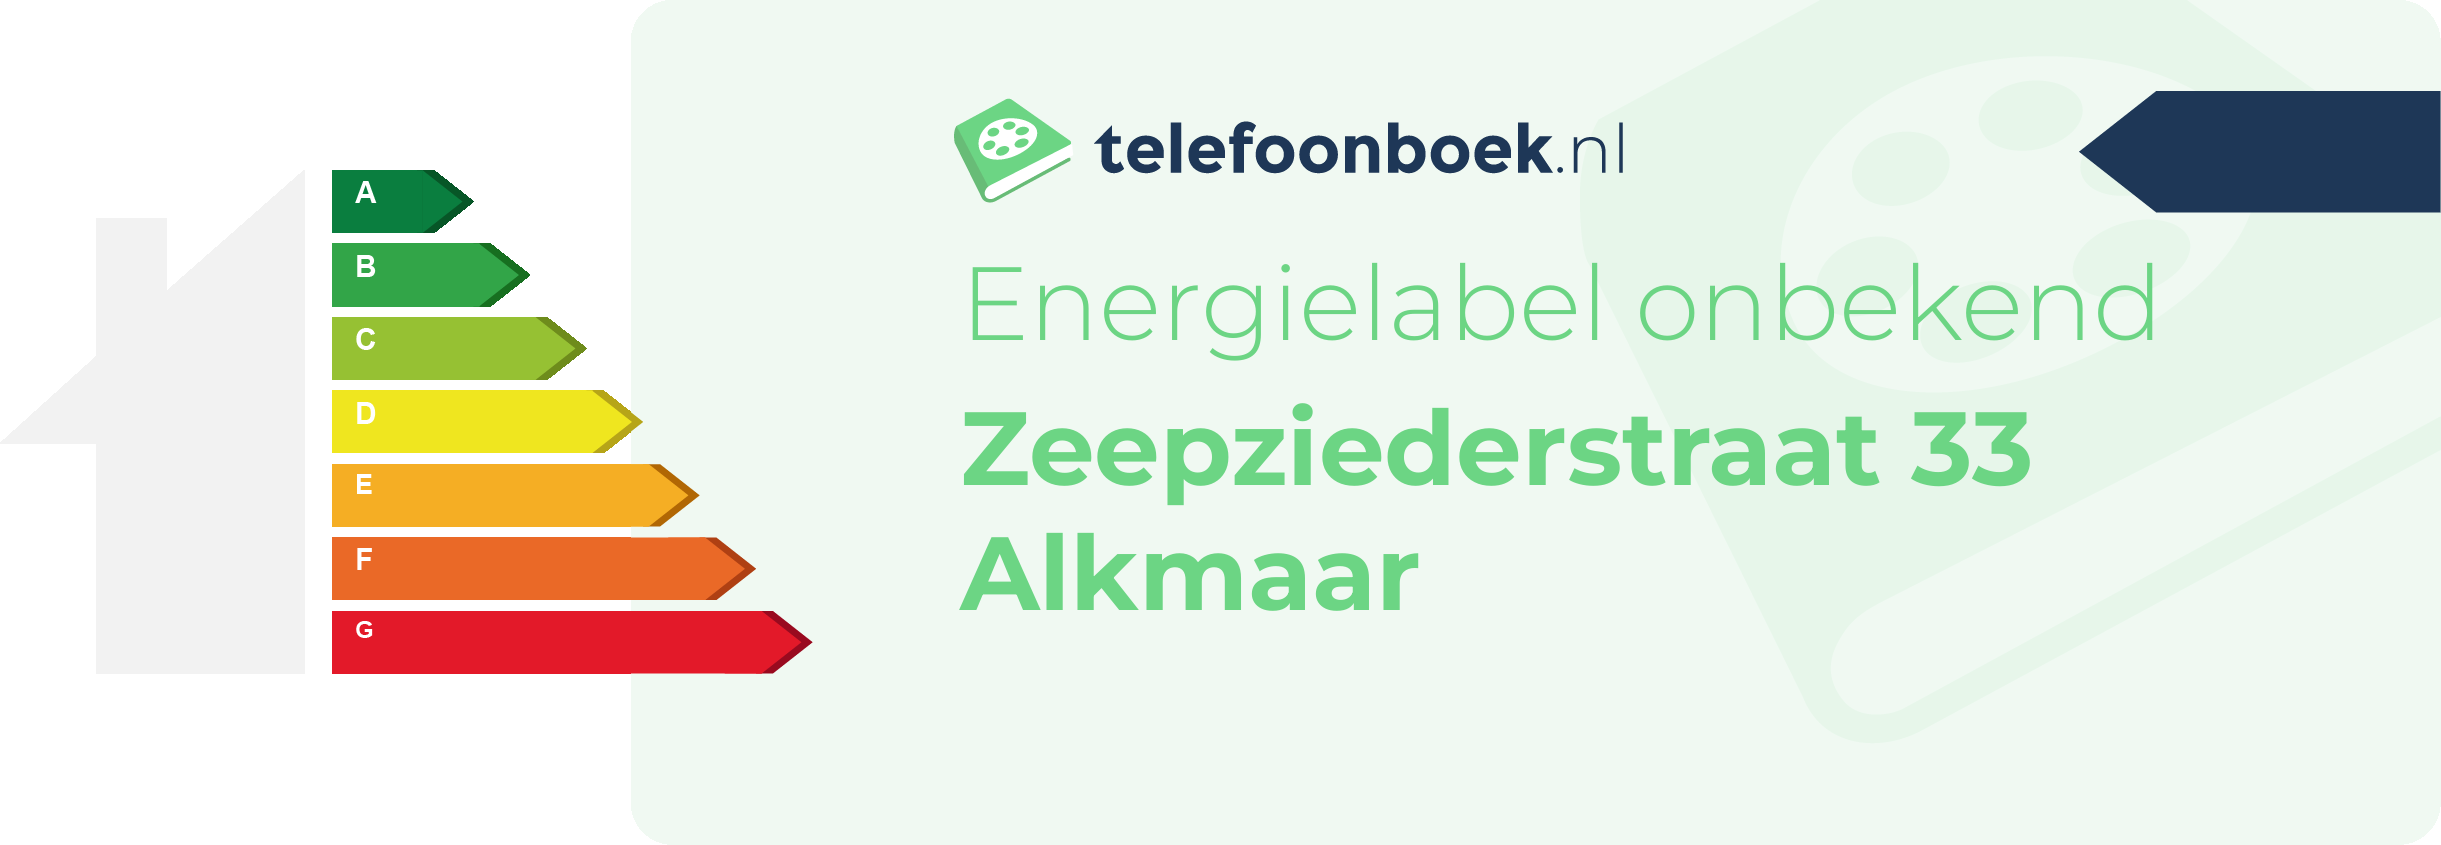 Energielabel Zeepziederstraat 33 Alkmaar